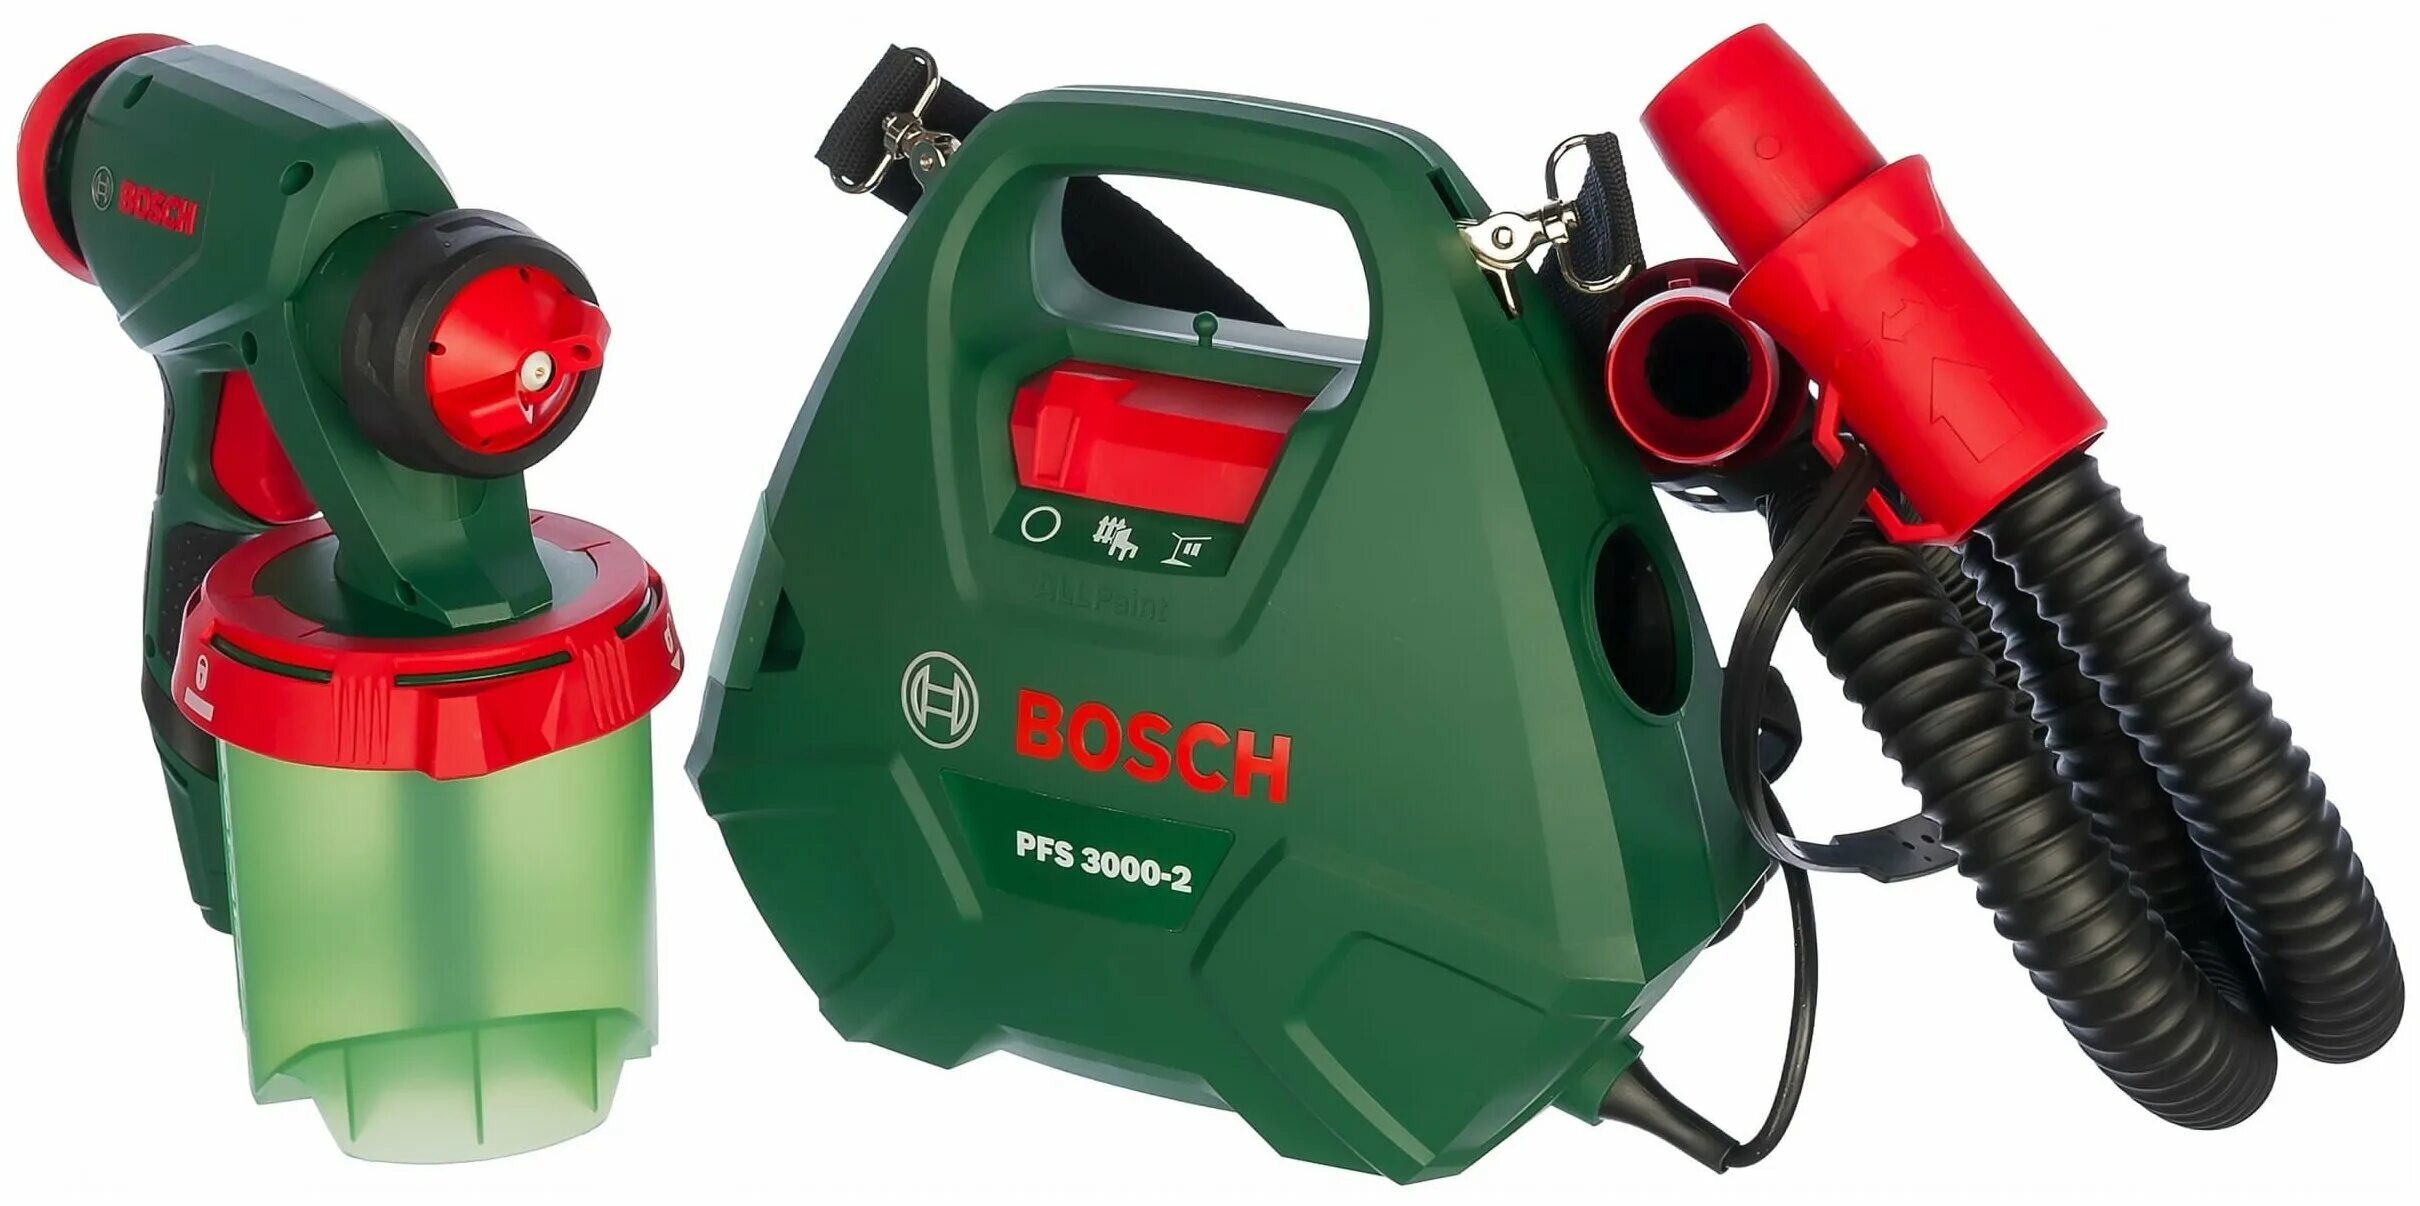 Bosch pfs 3000 2. Bosch 3000-2 краскопульт. Краскопульт Bosch PFS 3000-2 0.603.207.100. Краскопульт электрический Bosch PFS 3000-2. Краскораспылитель Bosch PFS 3000-2 0.